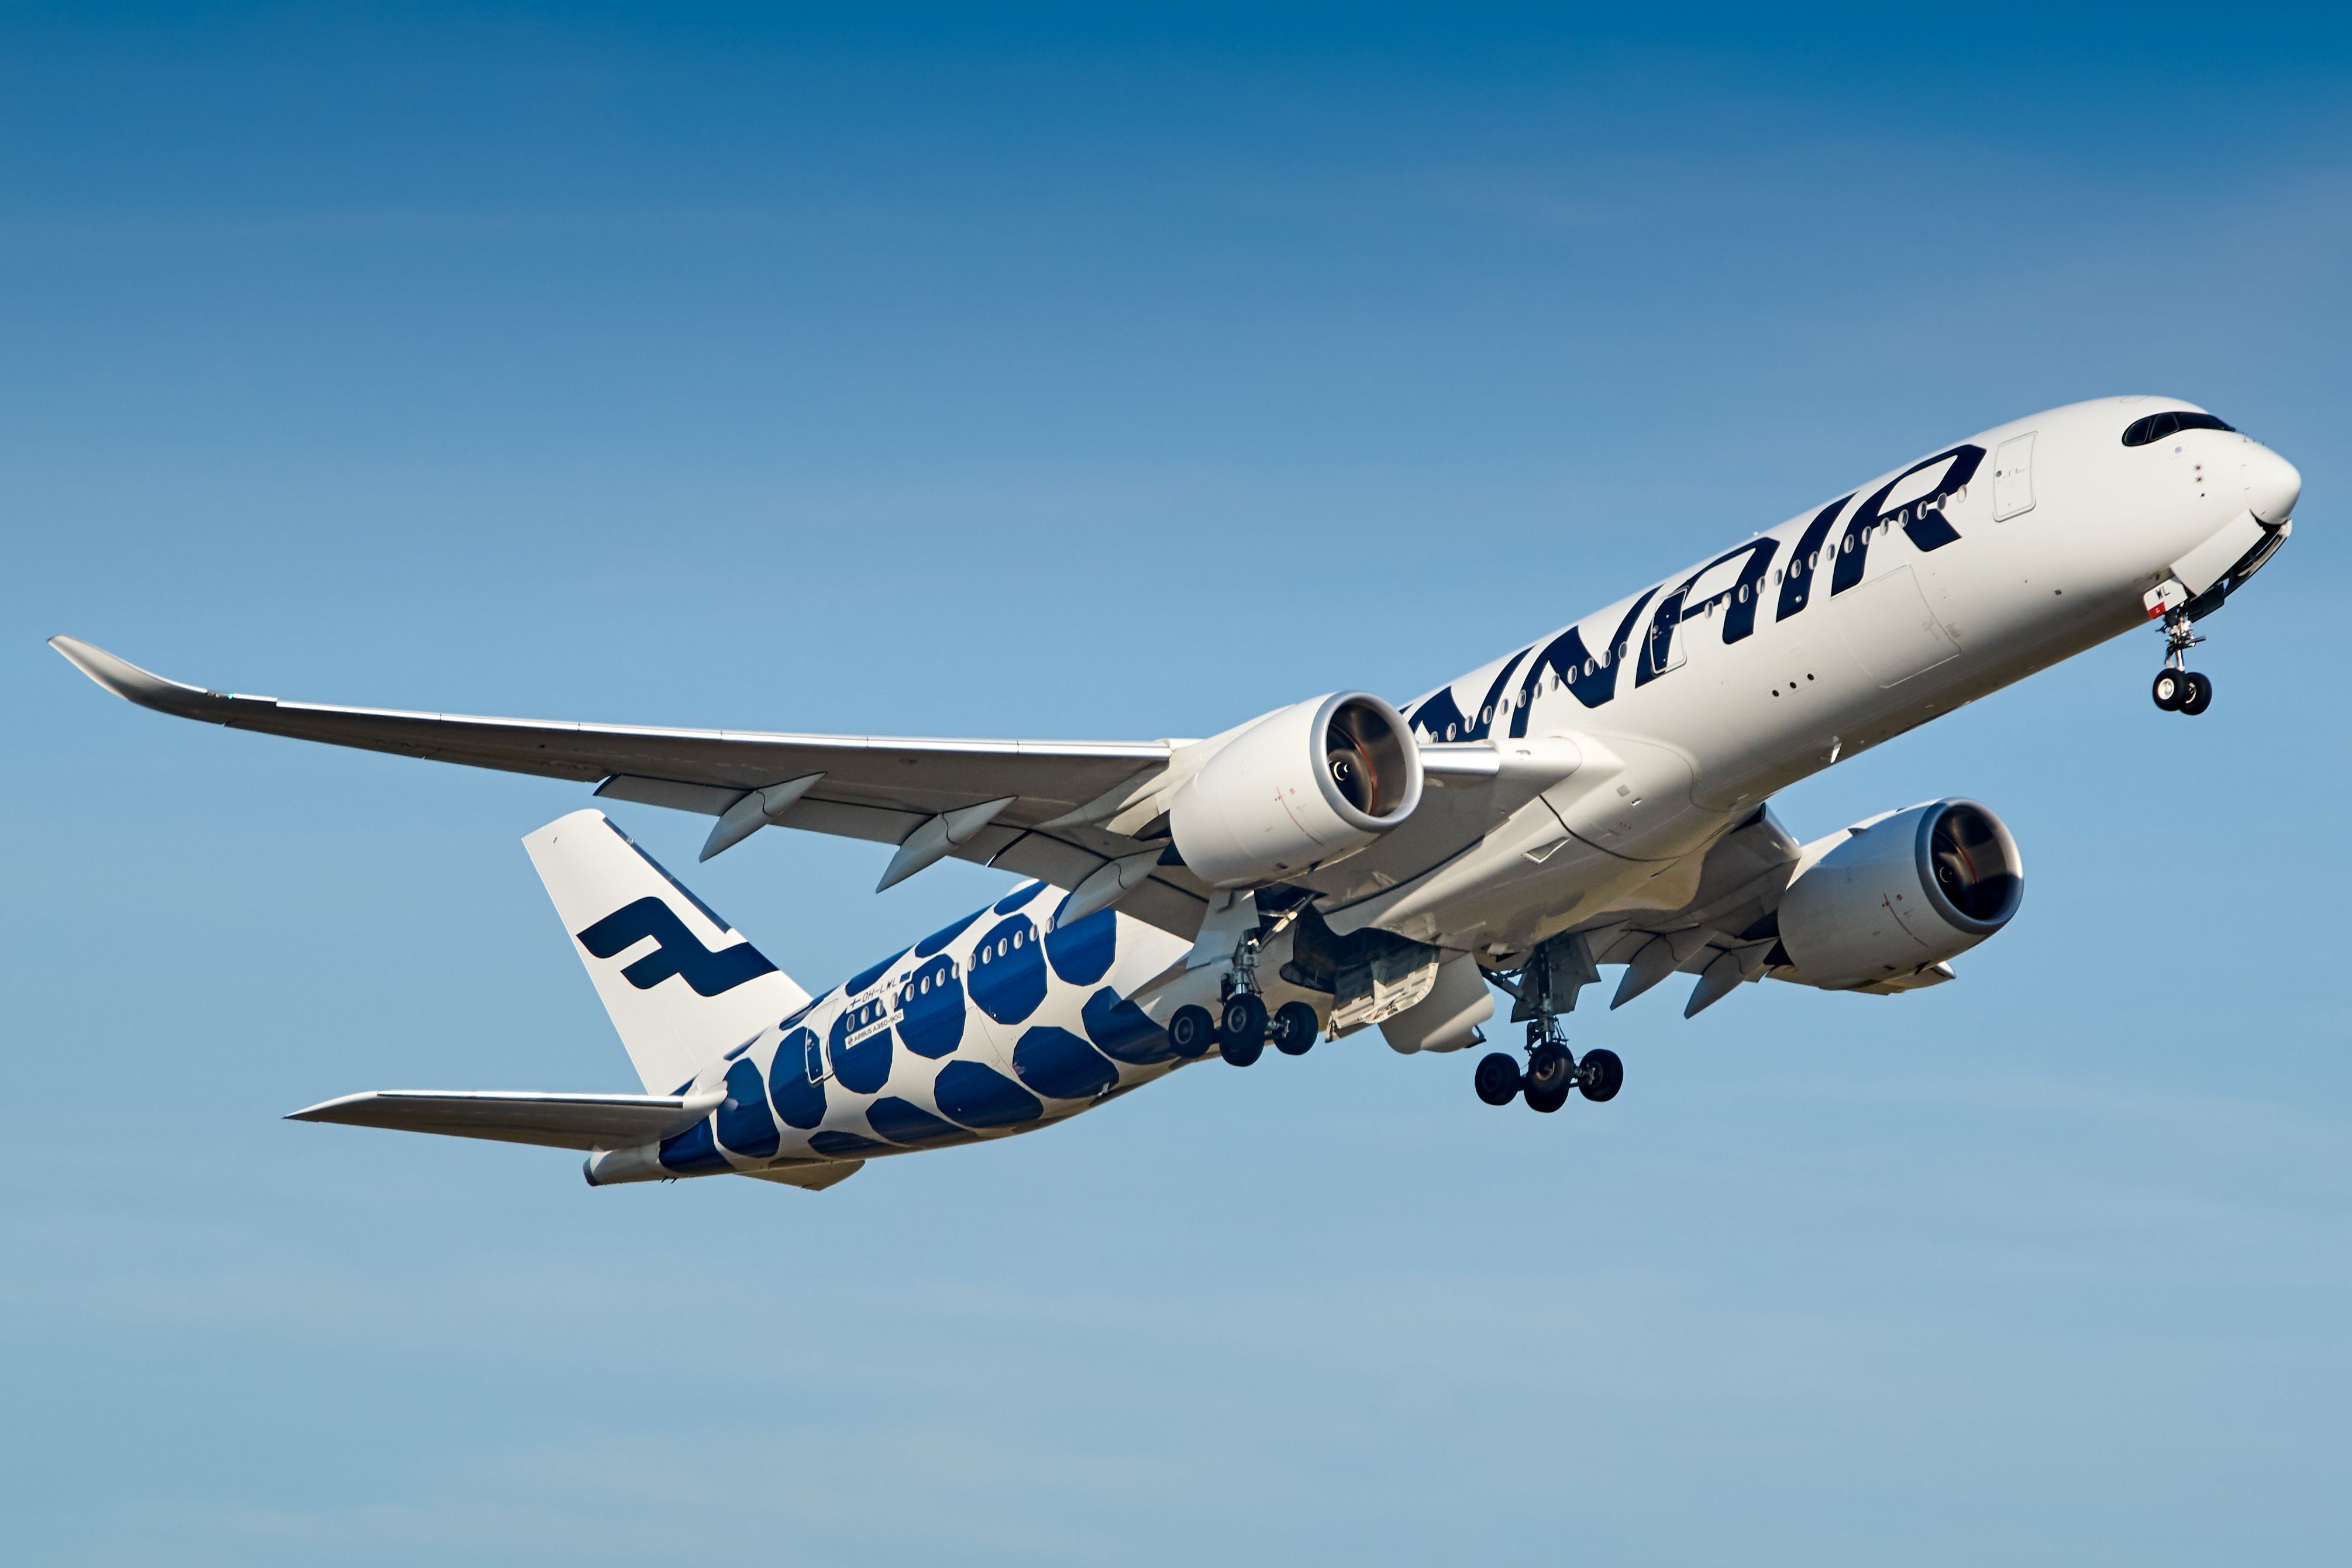 Finnair Airbus A350-900 departing Helsinki Airport HEL shutterstock_2201759035